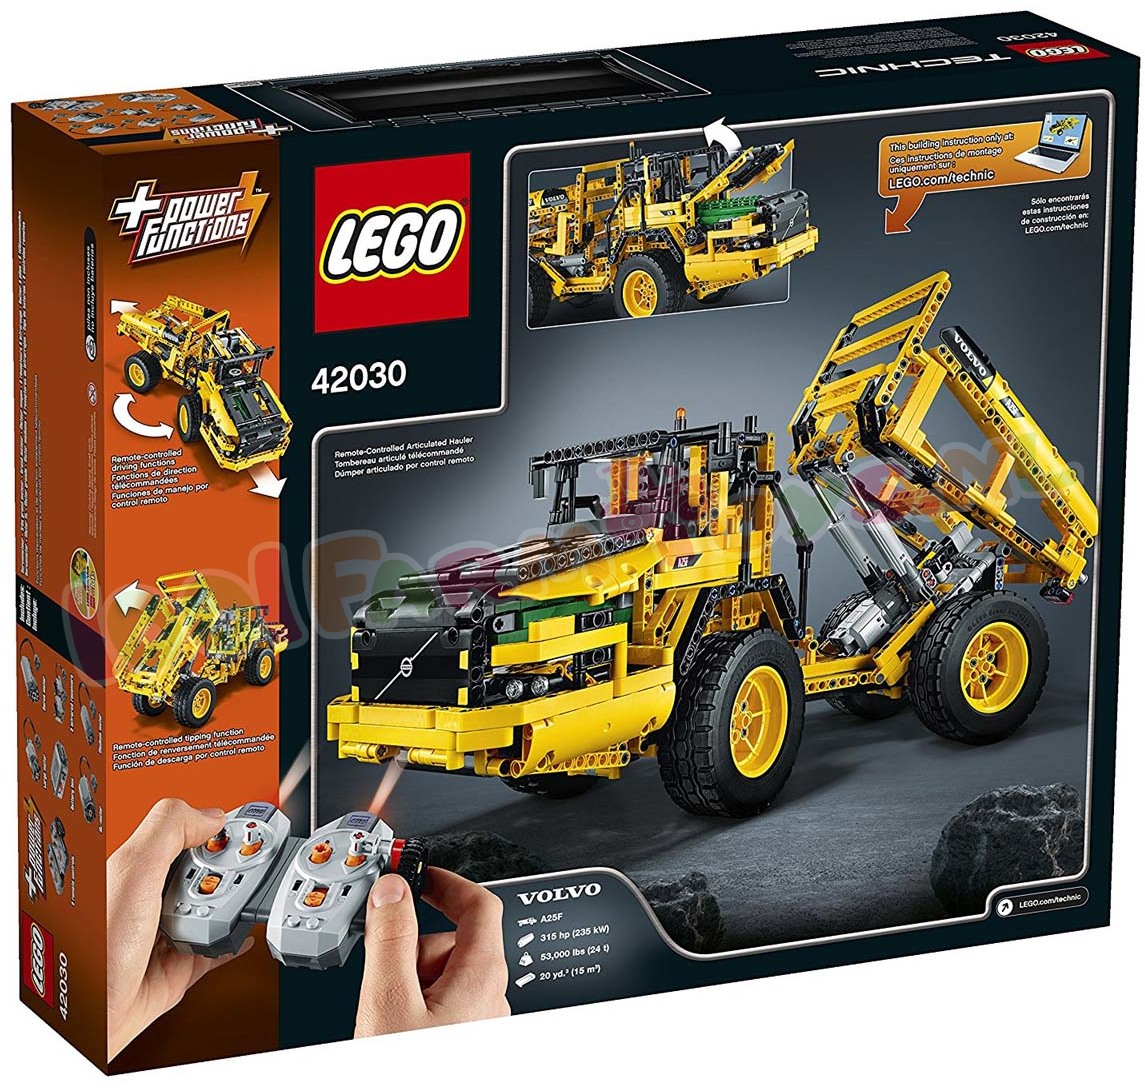 boekje gras Halloween LEGO TECHNIC VOLVO L350F WIELLADER - 42030 - Uitverkocht Farm -  1001Farmtoys landbouwspeelgoed - Let op dit model wordt niet meer  geproduceerd door